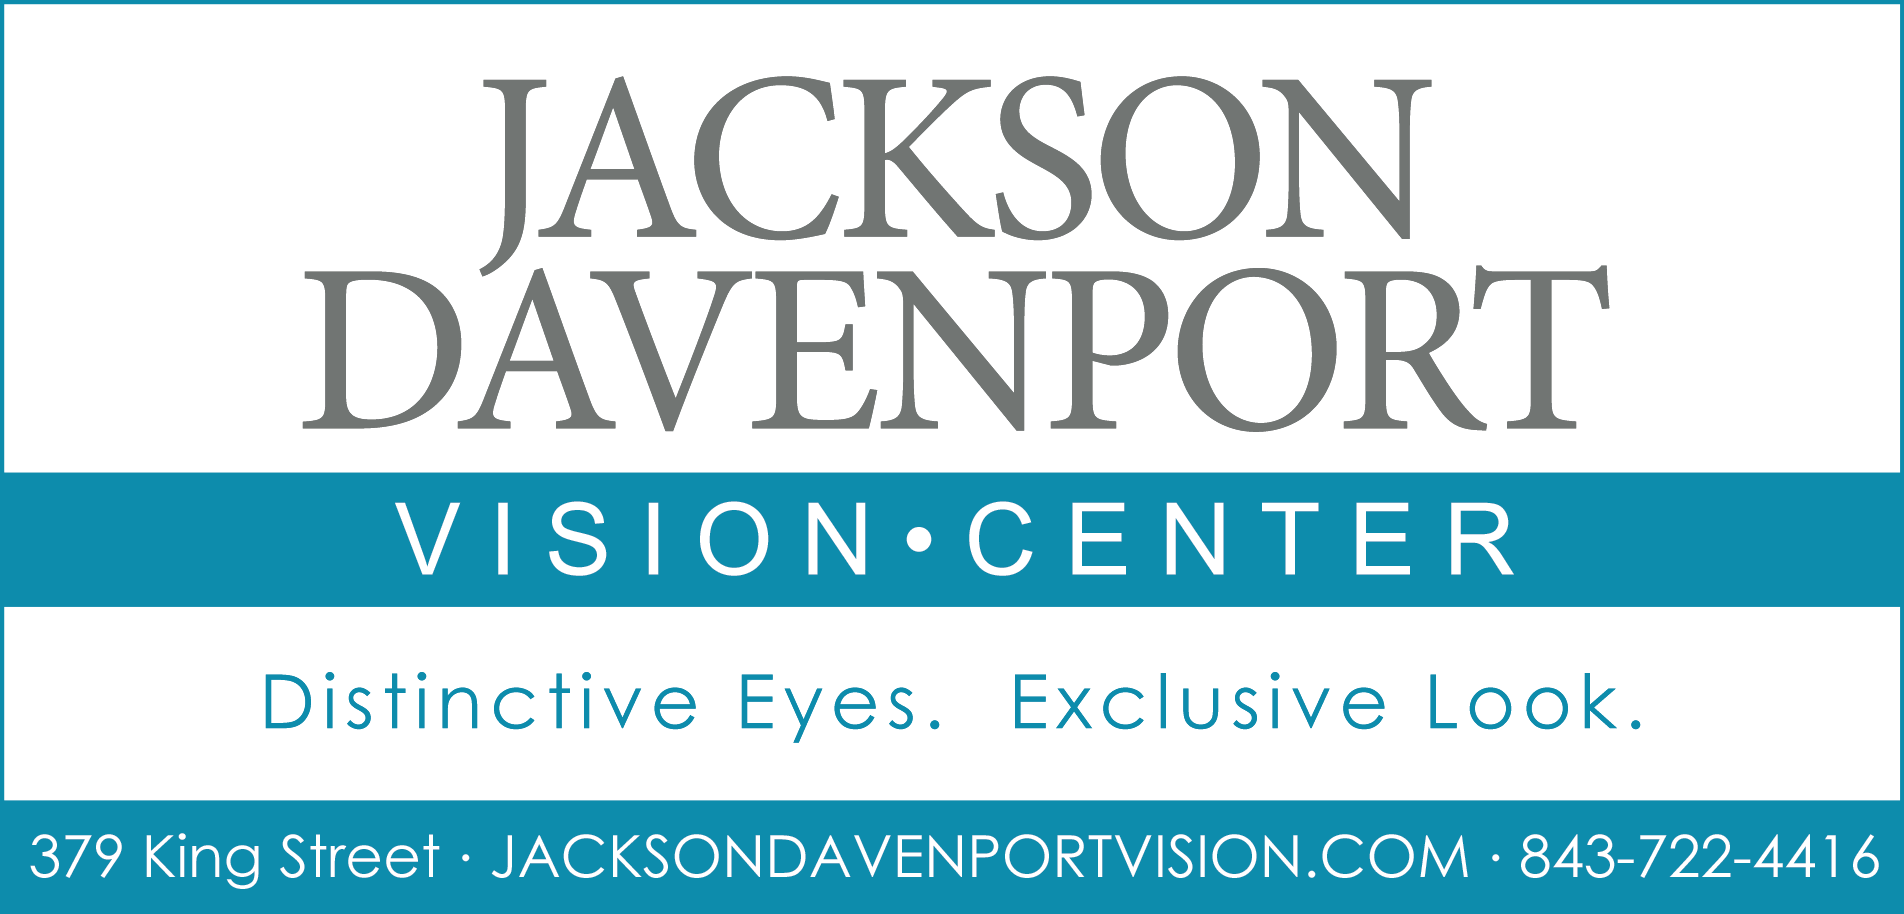 Jackson Davenport Print Ad